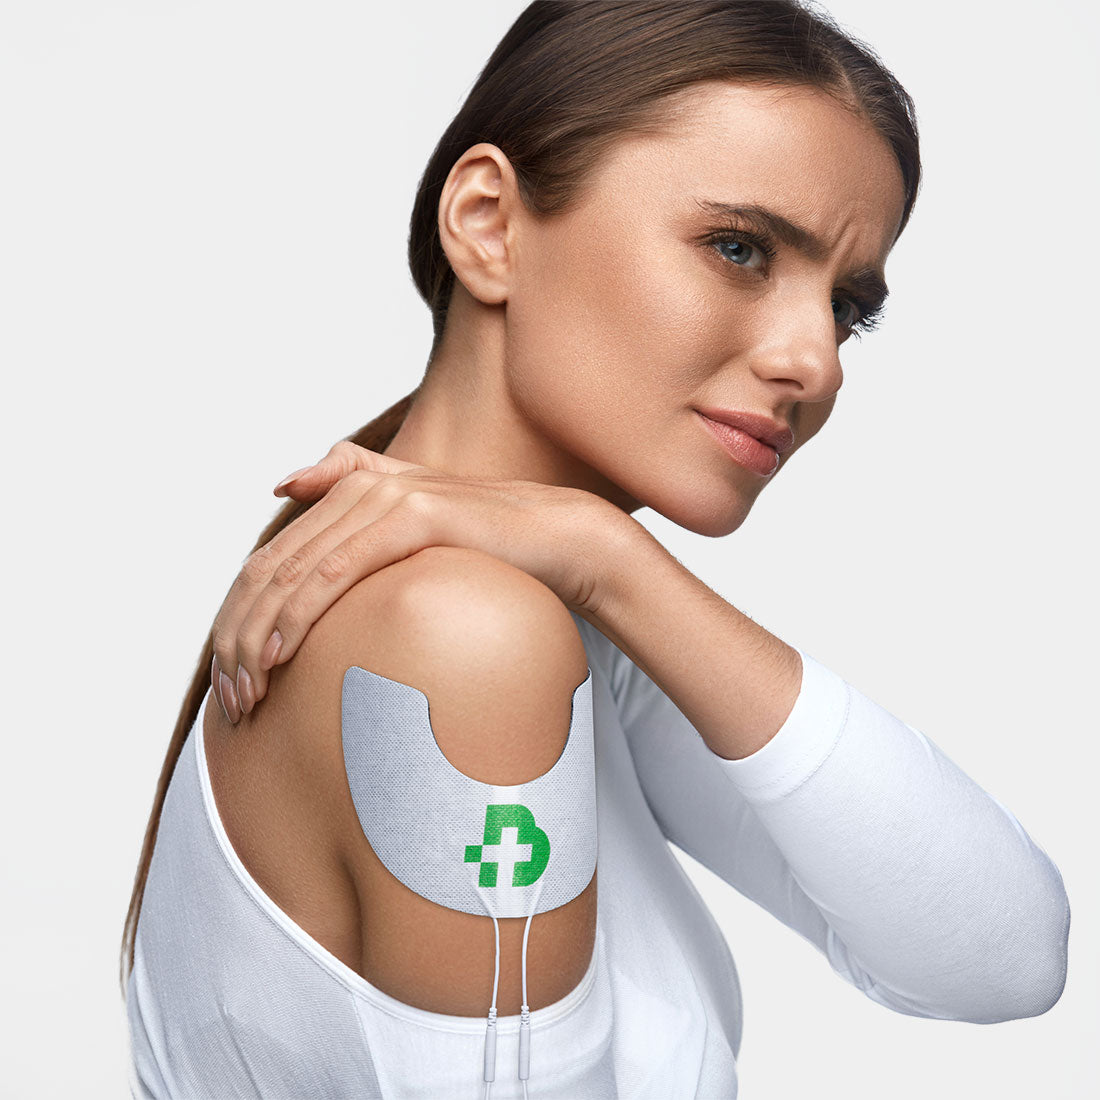 TESMED SHOULDER: 2 hochwertige Elektroden für die Schulterbehandlung